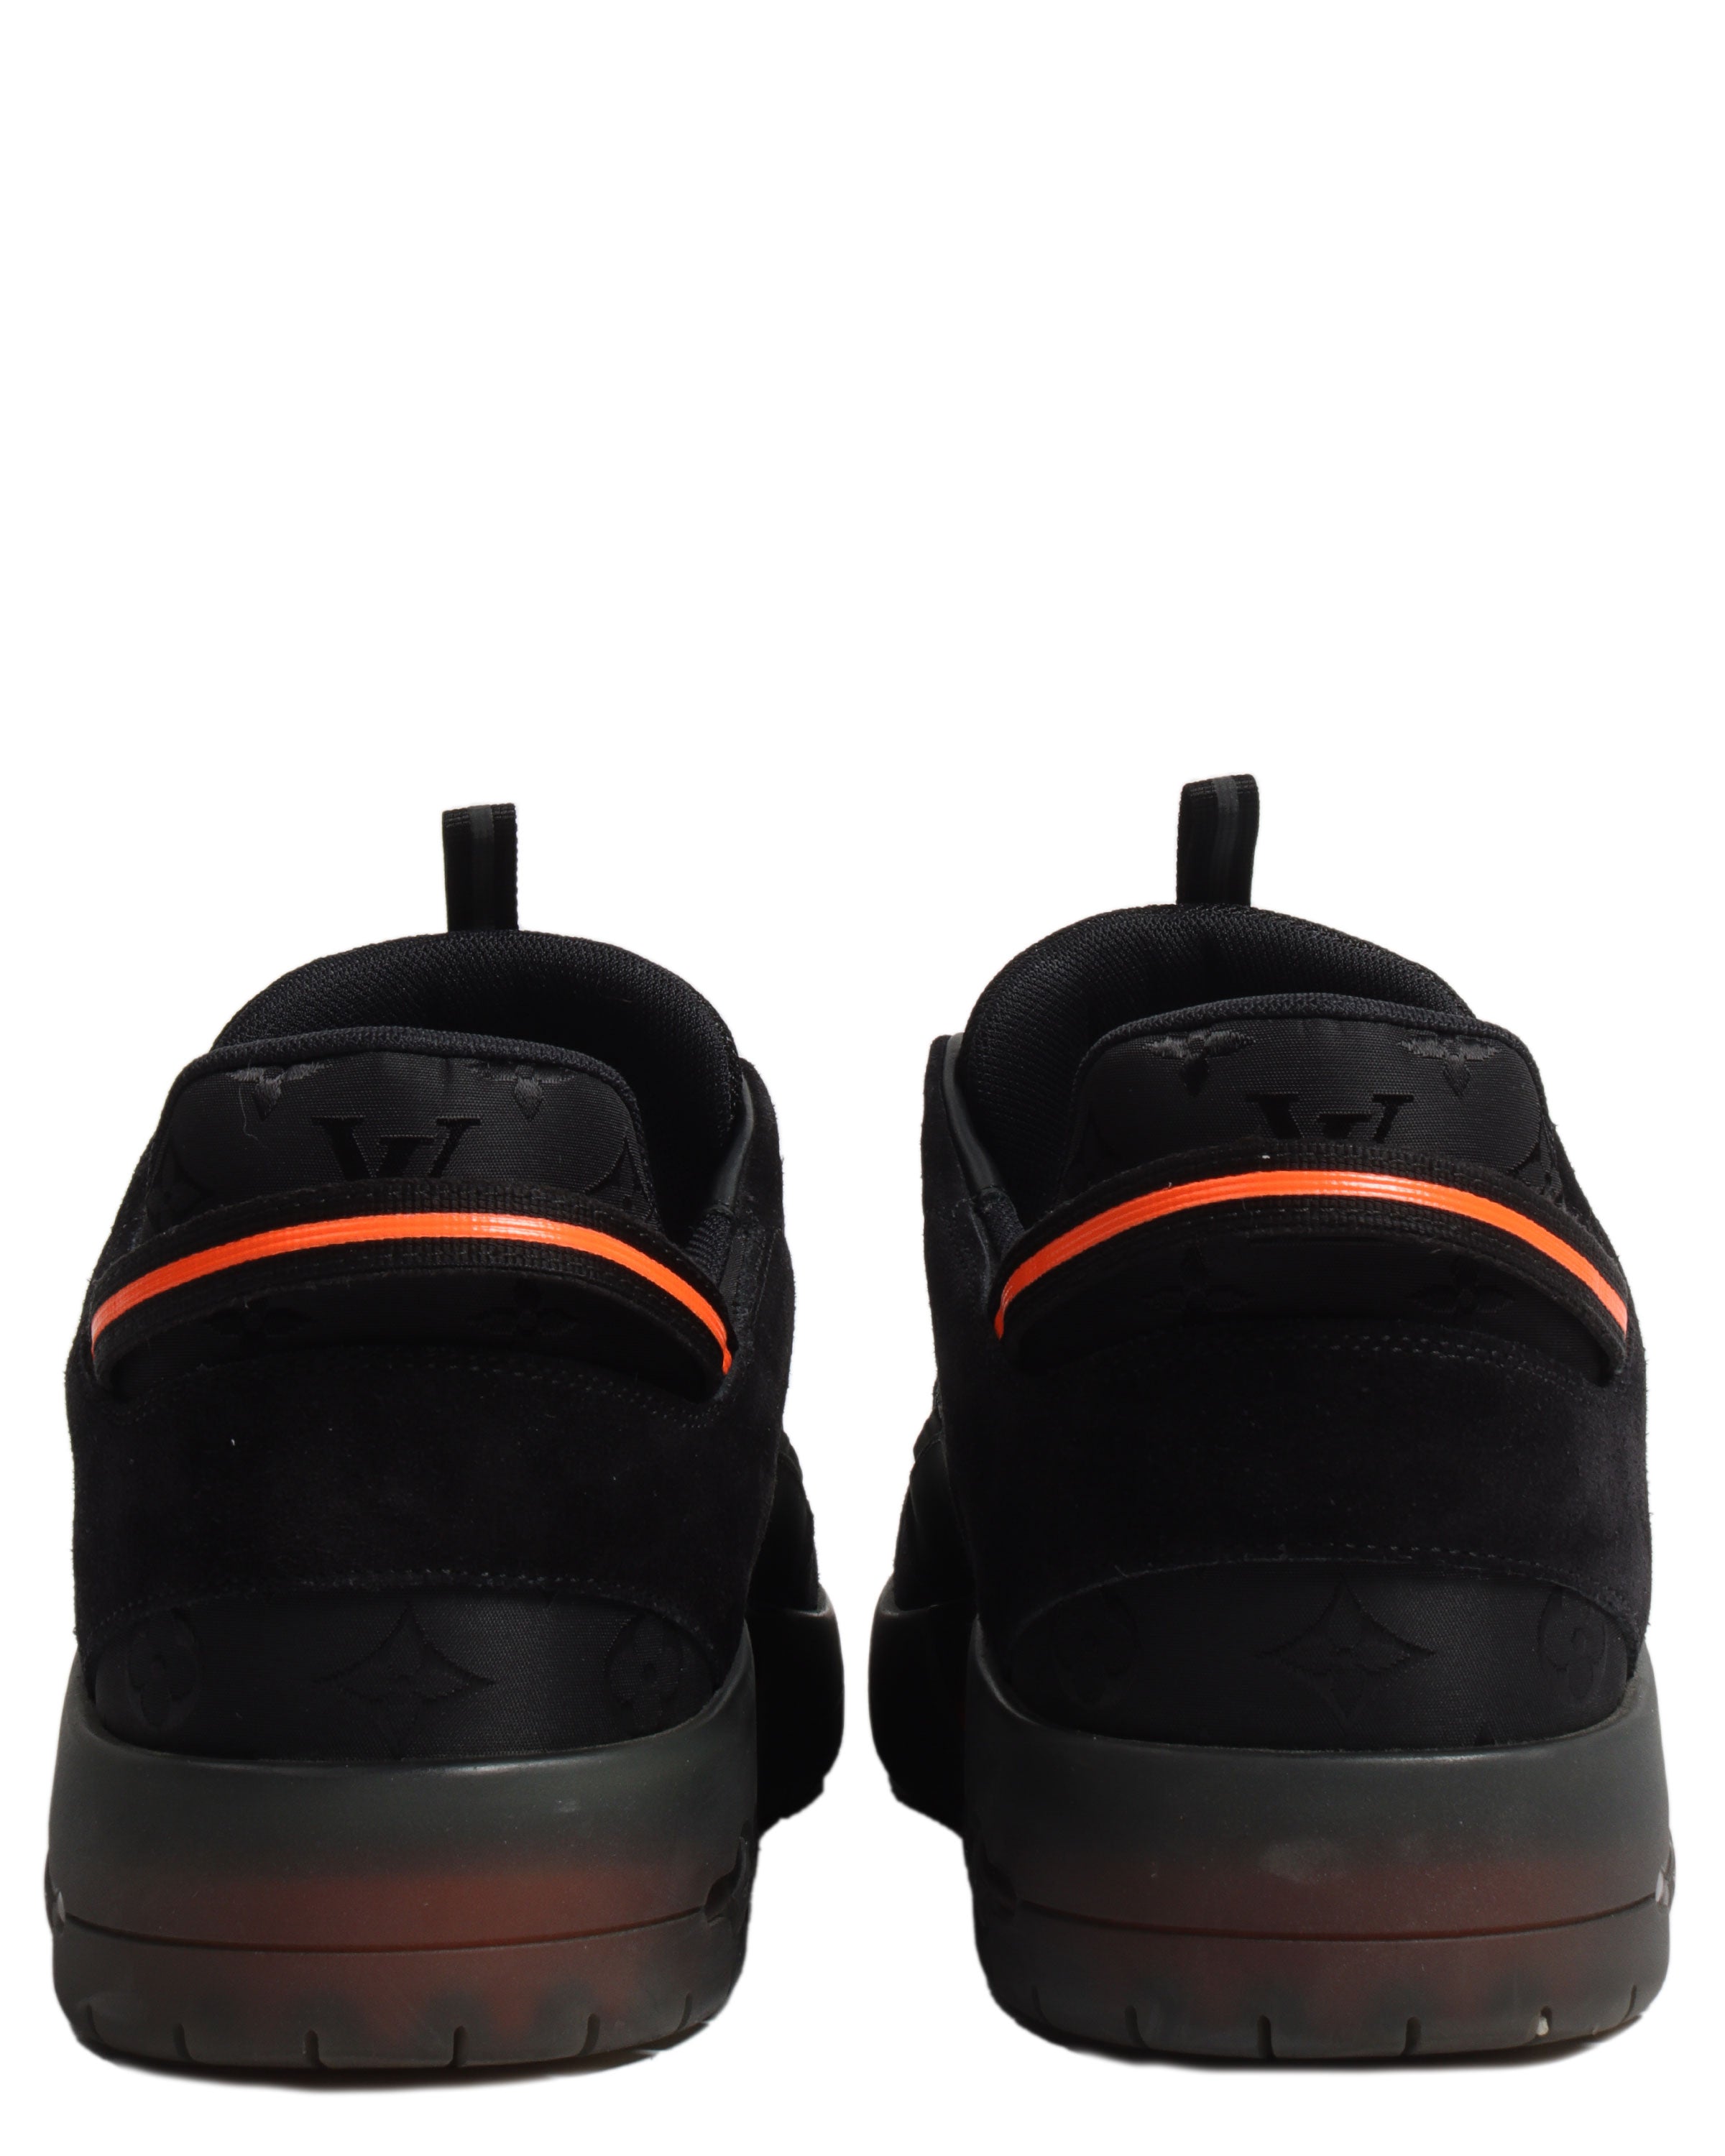 Louis Vuitton x Lucien Clark A View Sneaker Black Men's - 1A8J2V - US